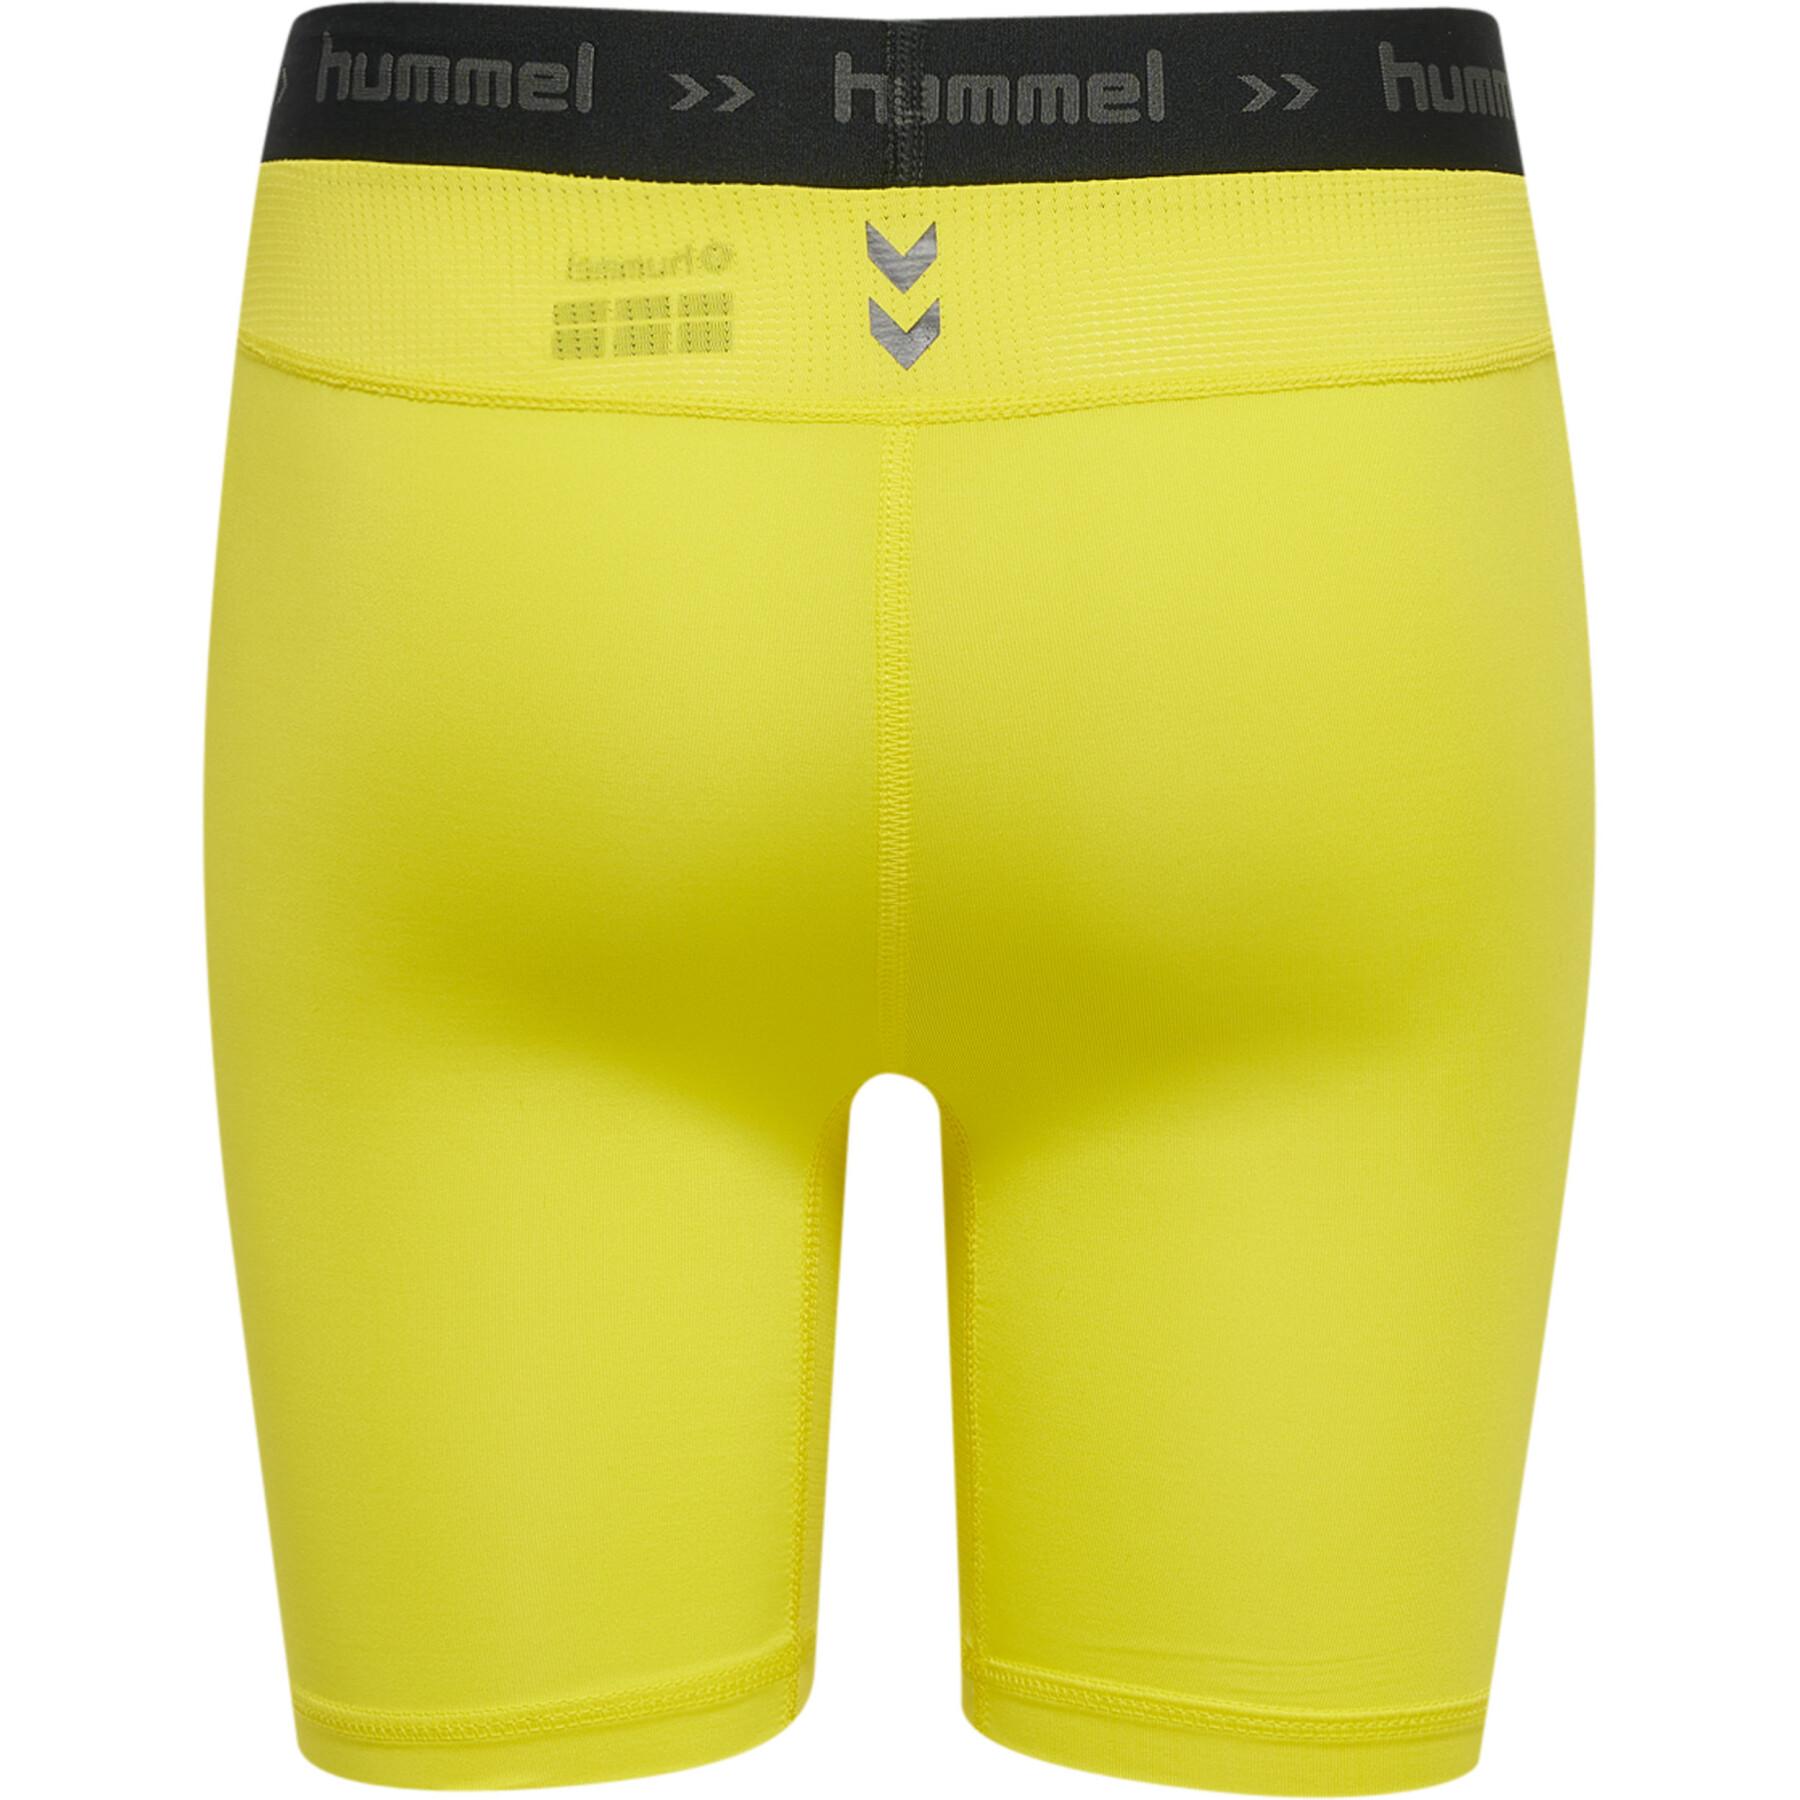 Pantalones cortos para niños Hummel First Performance